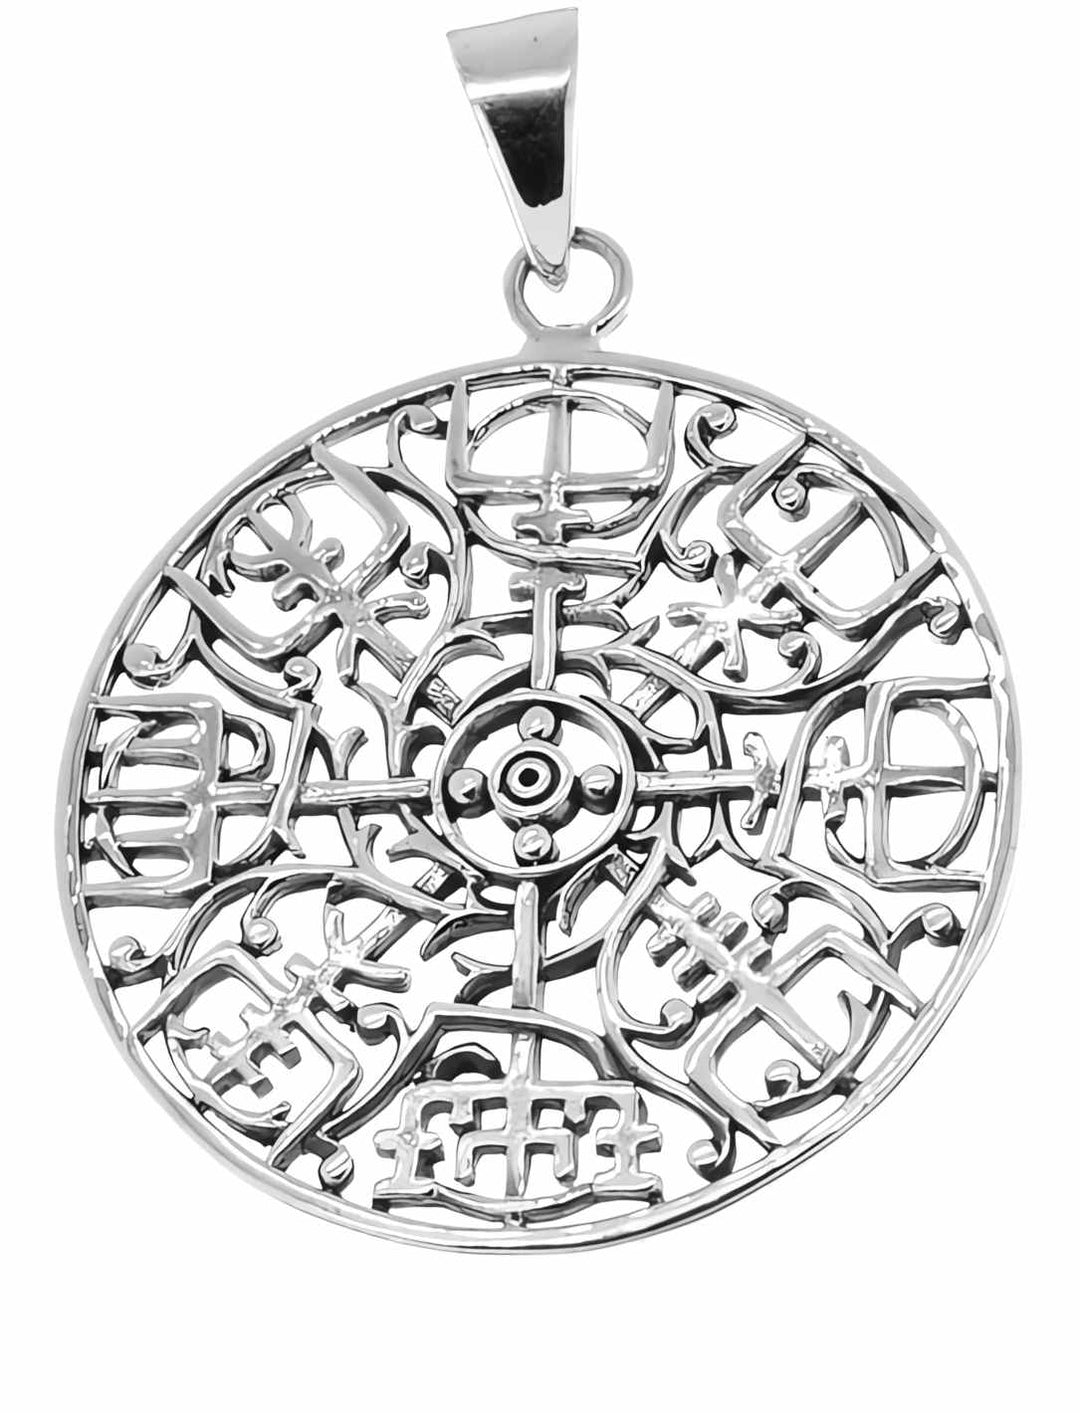 Vegvísir des Skalden Anhänger auf weißem Hintergrund – Fein gearbeiteter 925 Sterling Silber Anhänger, inspiriert von den skaldischen Erzählungen, bietet nicht nur Wegweisung, sondern auch eine Verbindung zur nordischen Mythologie.